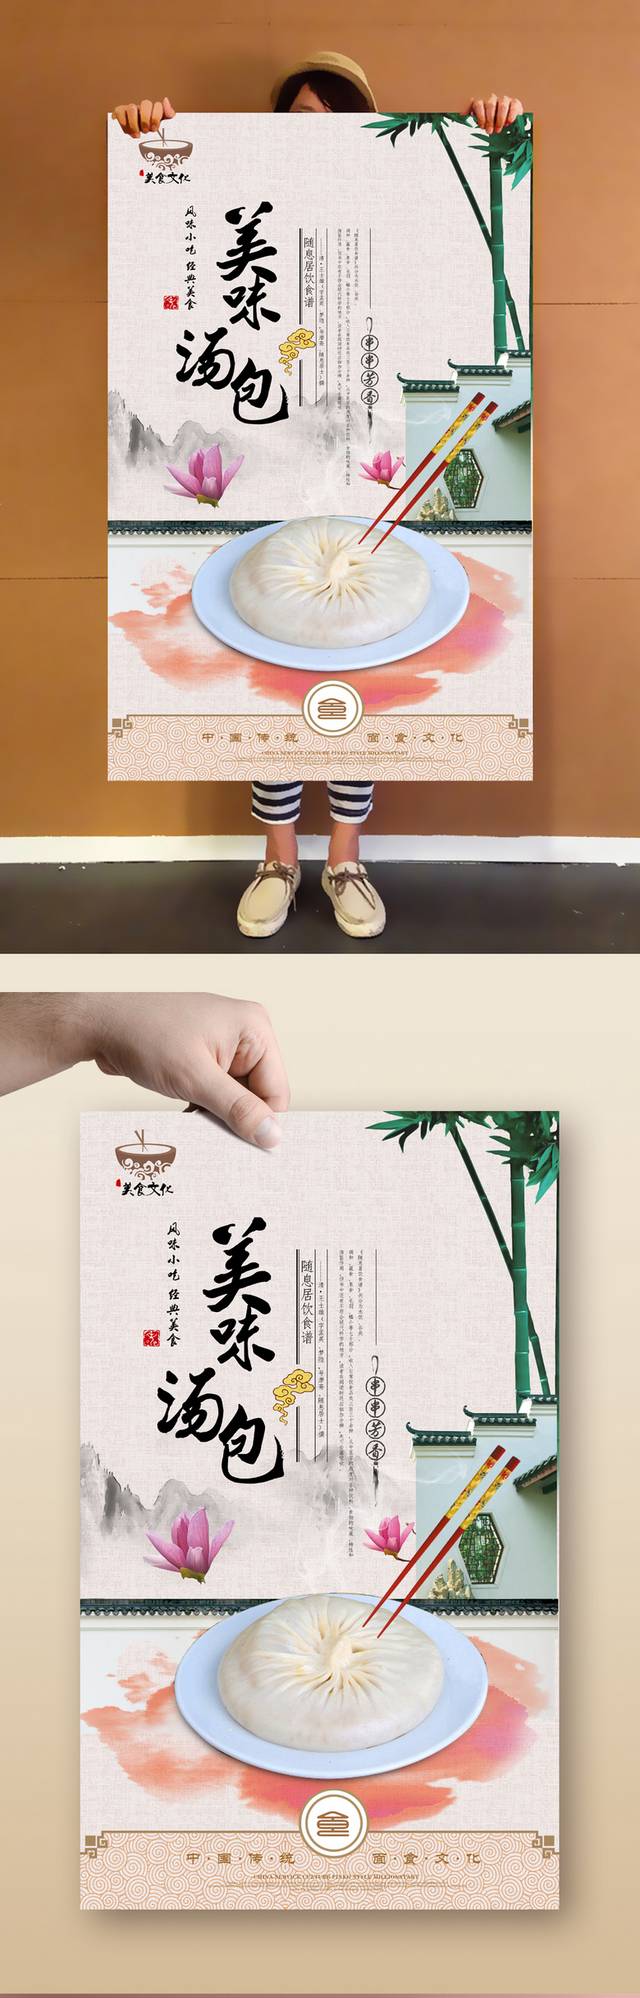 中国风汤包宣传海报设计